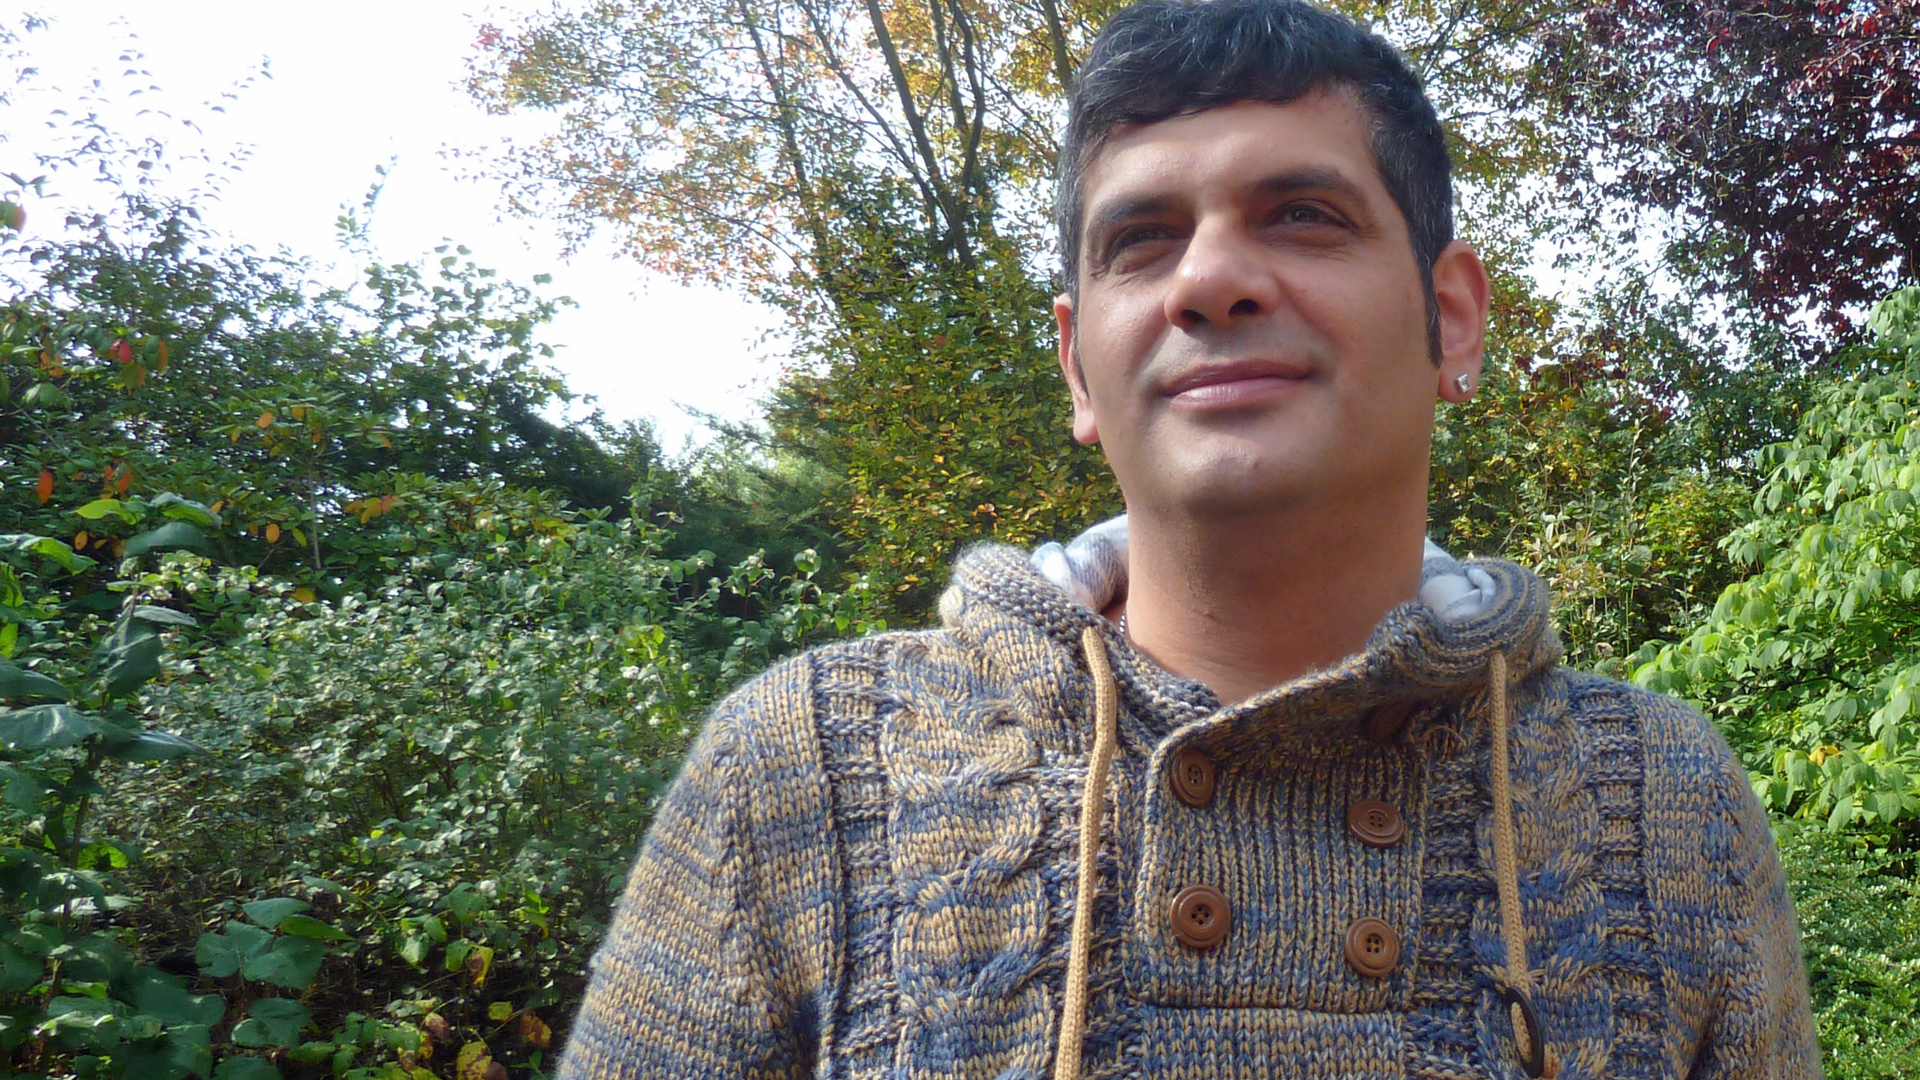 Bülent Askar ist 42 Jahre alt und lebt mit seiner Familie in München. Er leitet das christliche Hilfsprojekt „Perlacher Herz“, das Nachbarschaftshilfe anbietet.